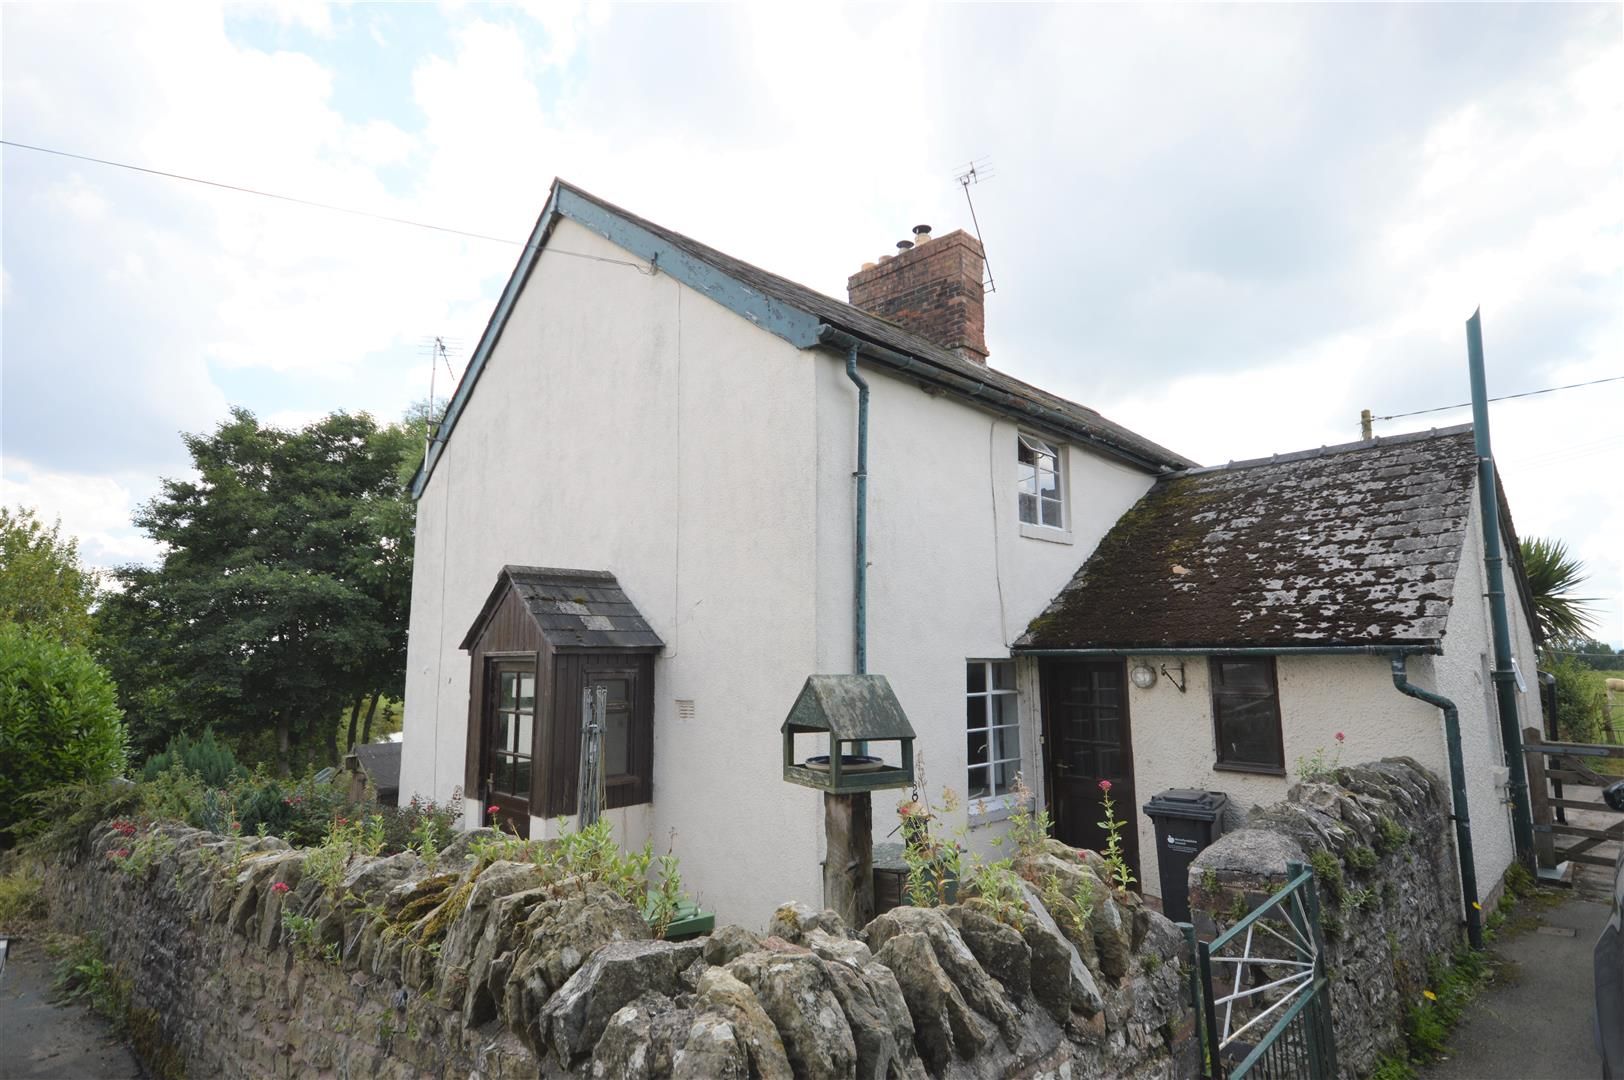 2 bed cottage for sale in Shobdon - Property Image 1